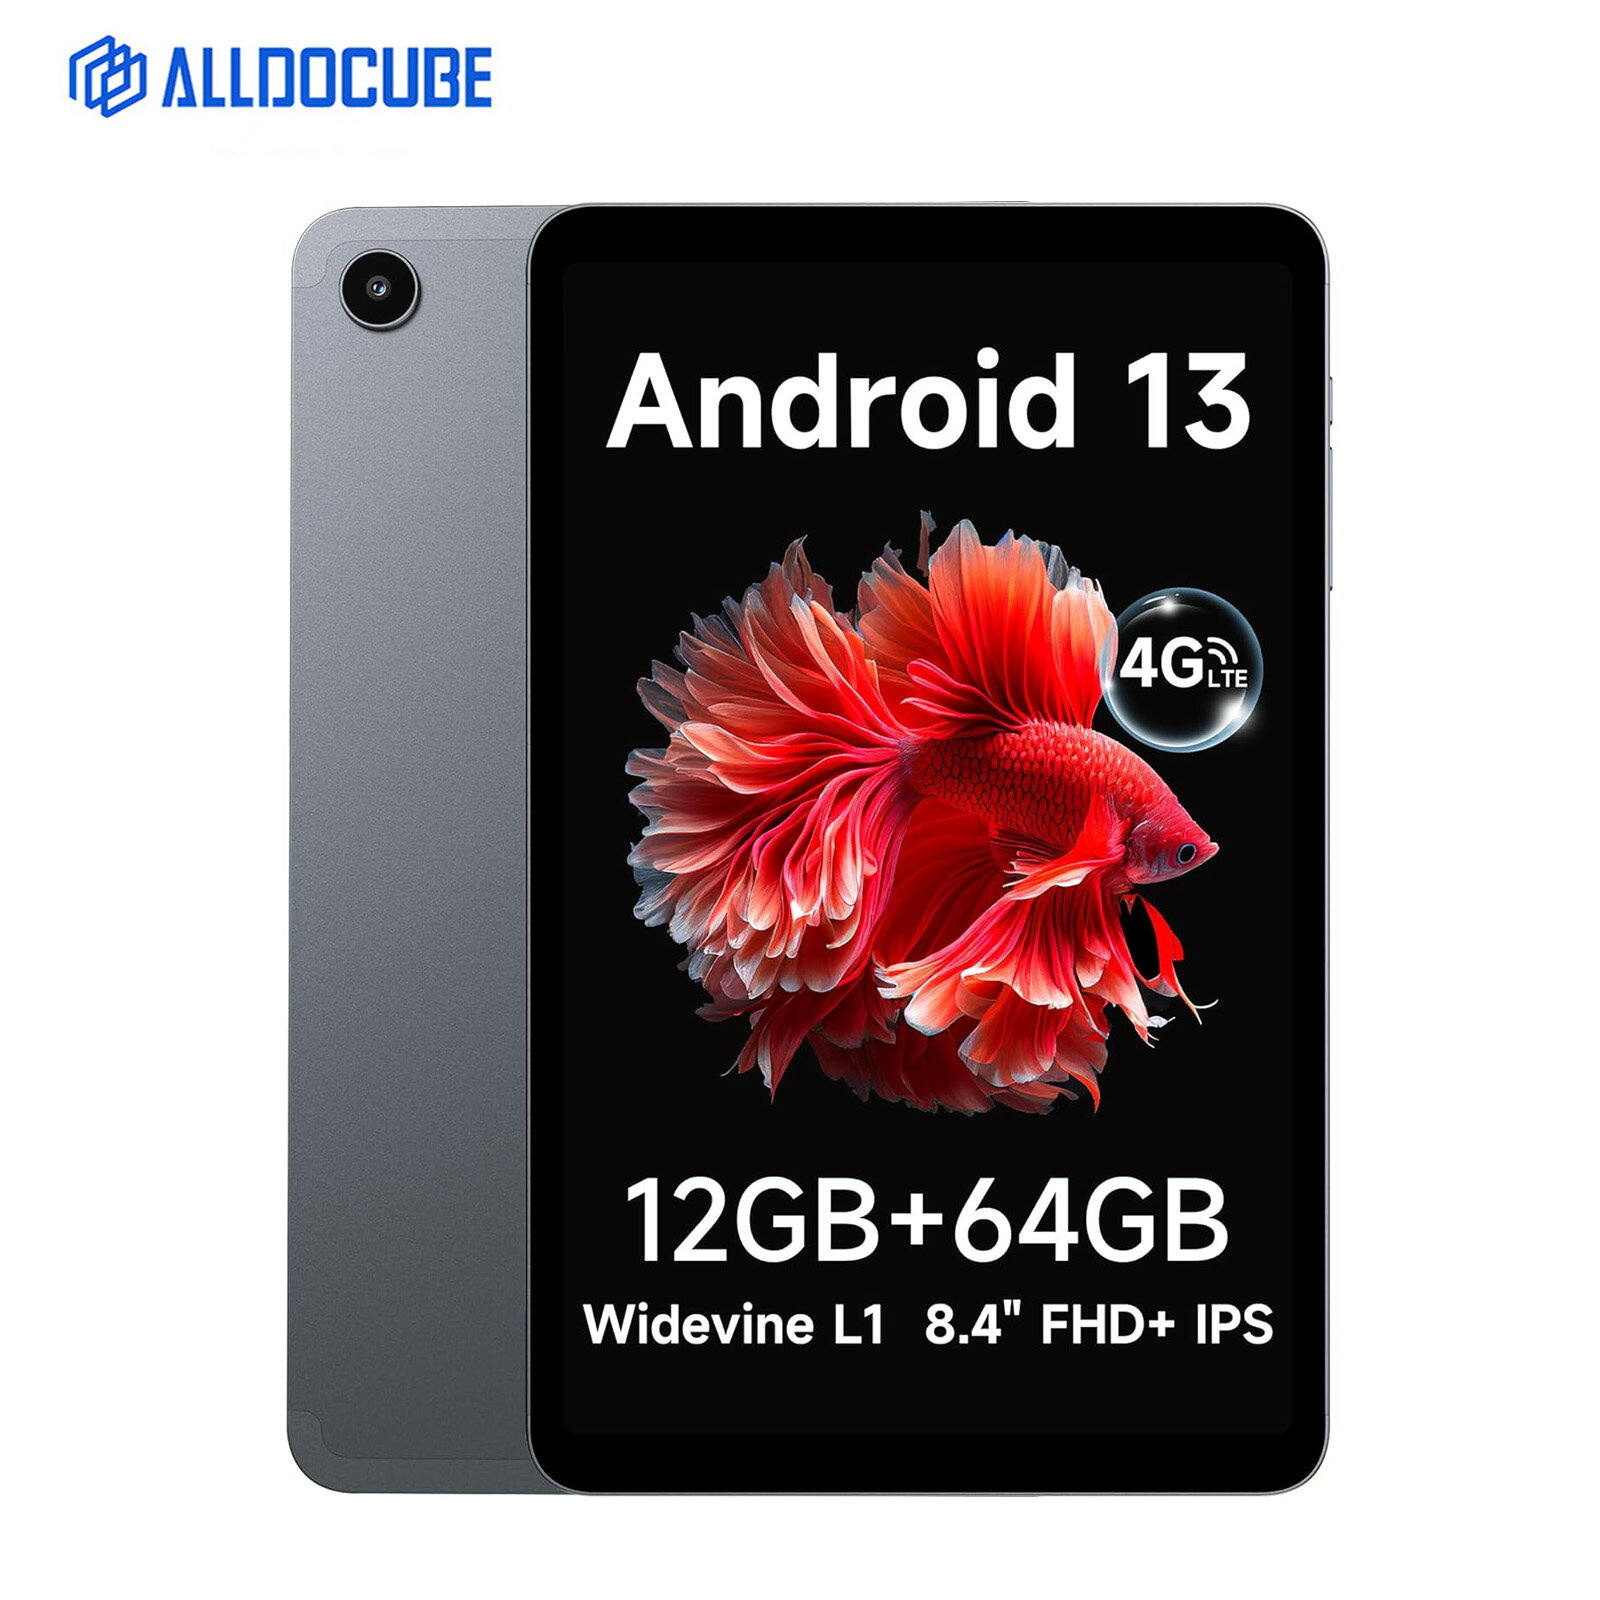 【限定12999円＆レビュー特典】ALLDOCUBE iPlay50 mini 8インチタブレット Android 13タブレット wifiモデル 4GLTE通信可 FHD1920*1200 Incell IPSディスプレイ 12GB(4+8拡張) 64GBストレージ Widevine L1 8コアCPU SIMフリー GMS/PSE認証済 GPS機能付き